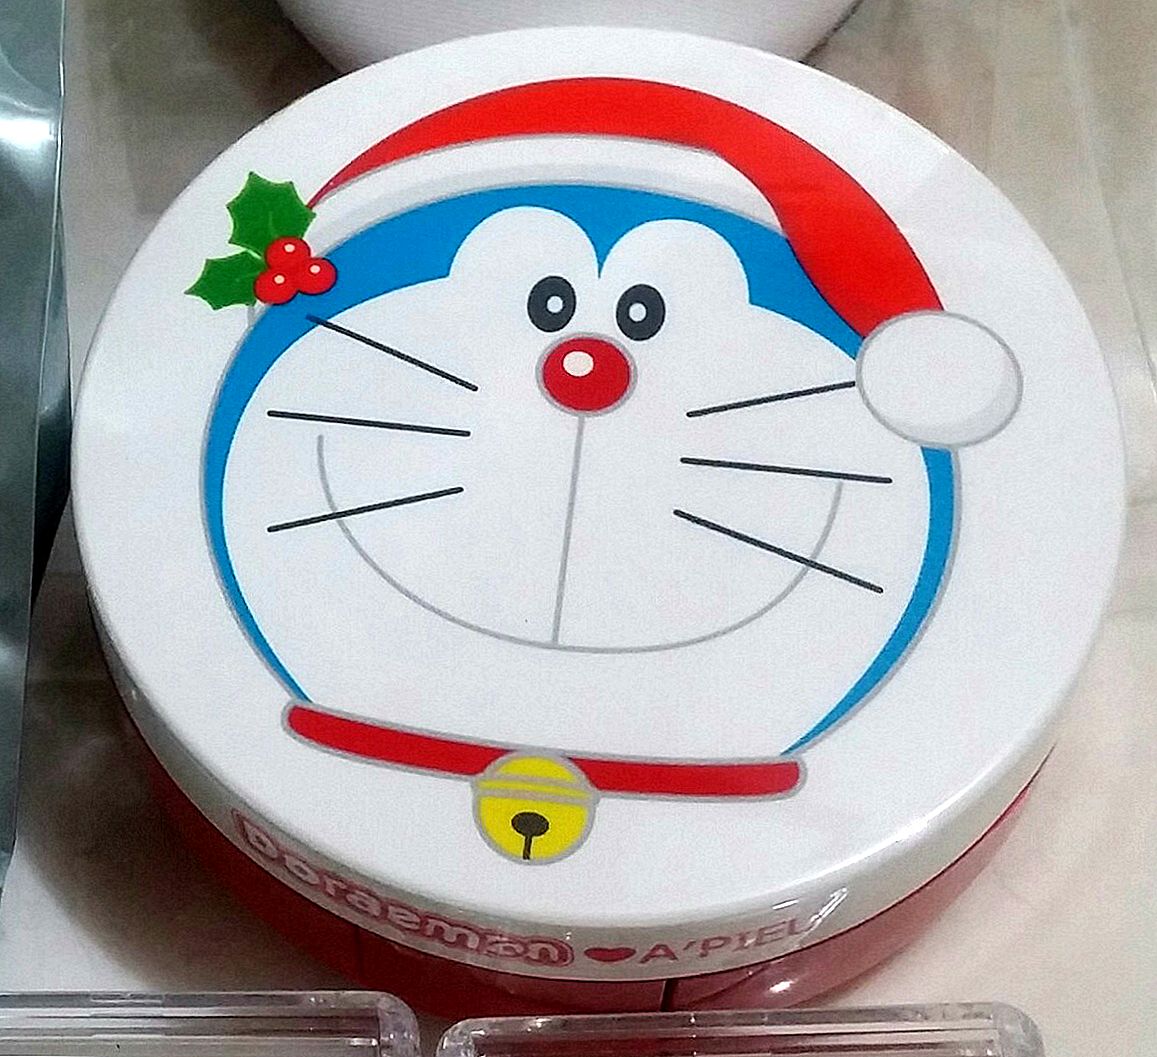 Treba li Doraemon završiti u 6. svesku?